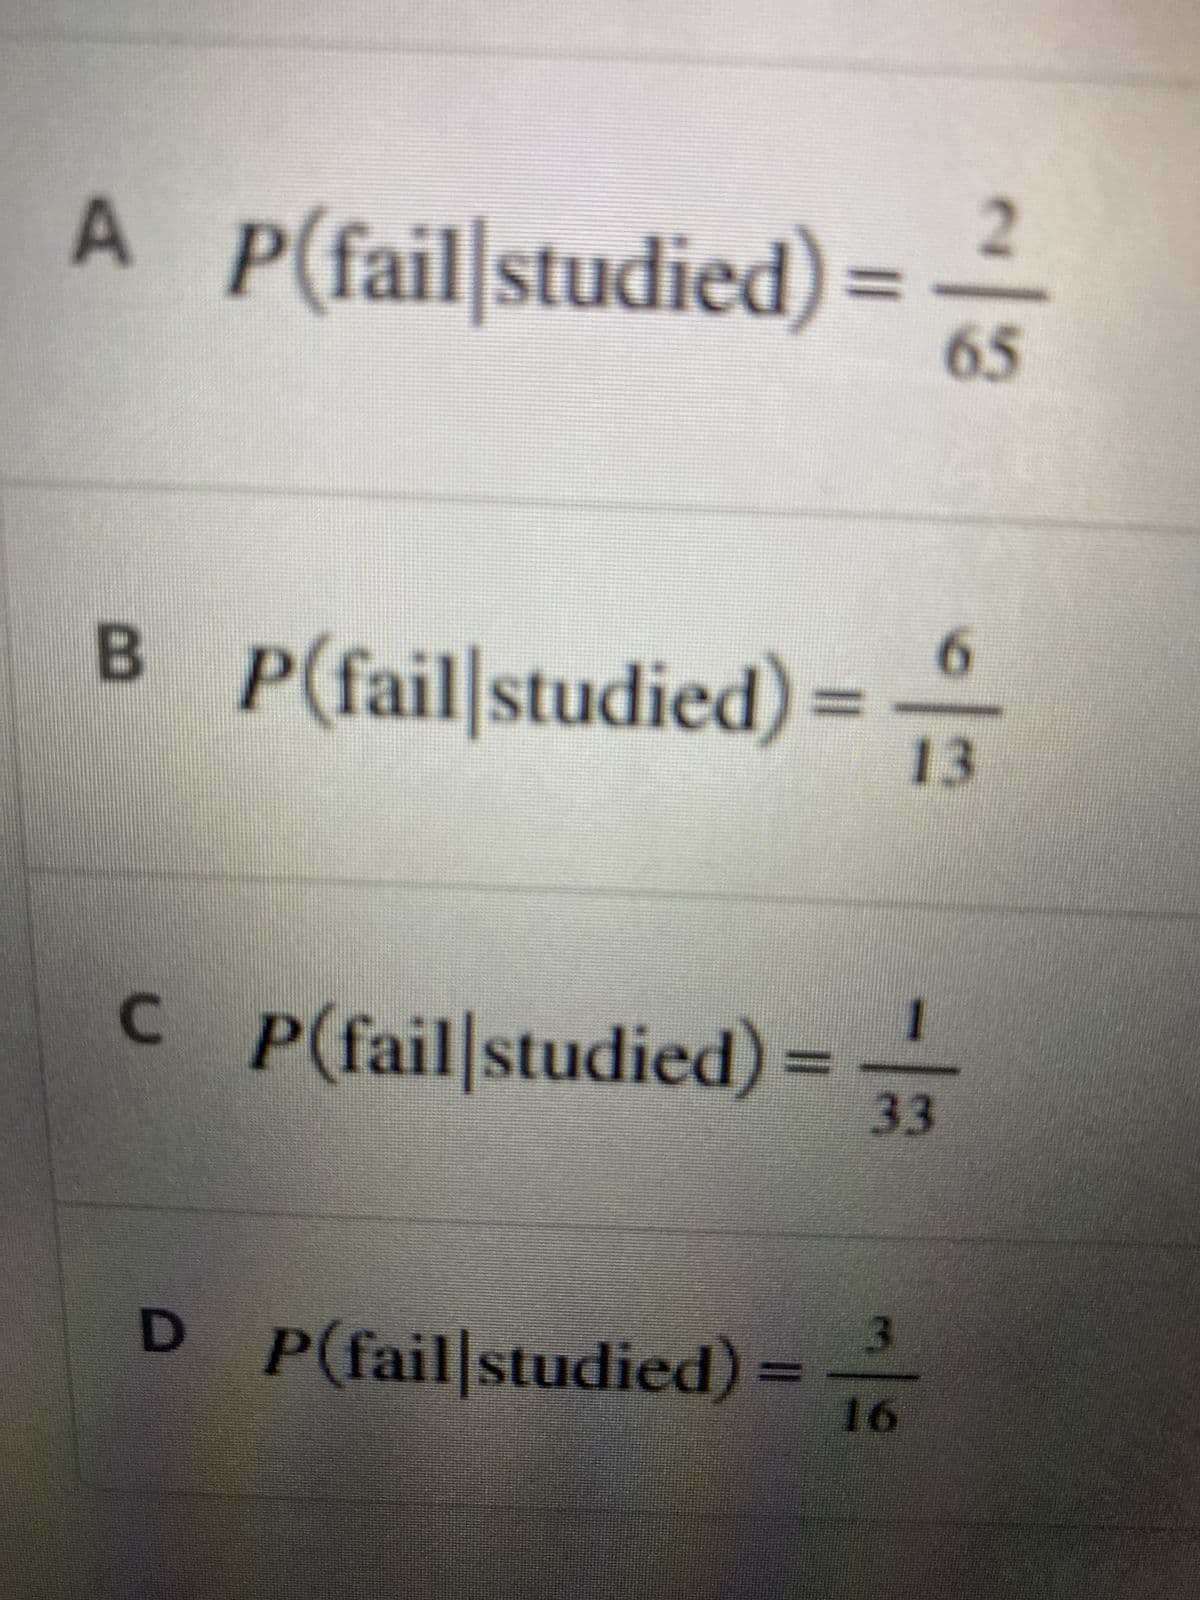 A P(fail studied)= 65
6
BP(fail studied) = 13
CP(fail studied) =
3
D P(fail|studied) 16
33